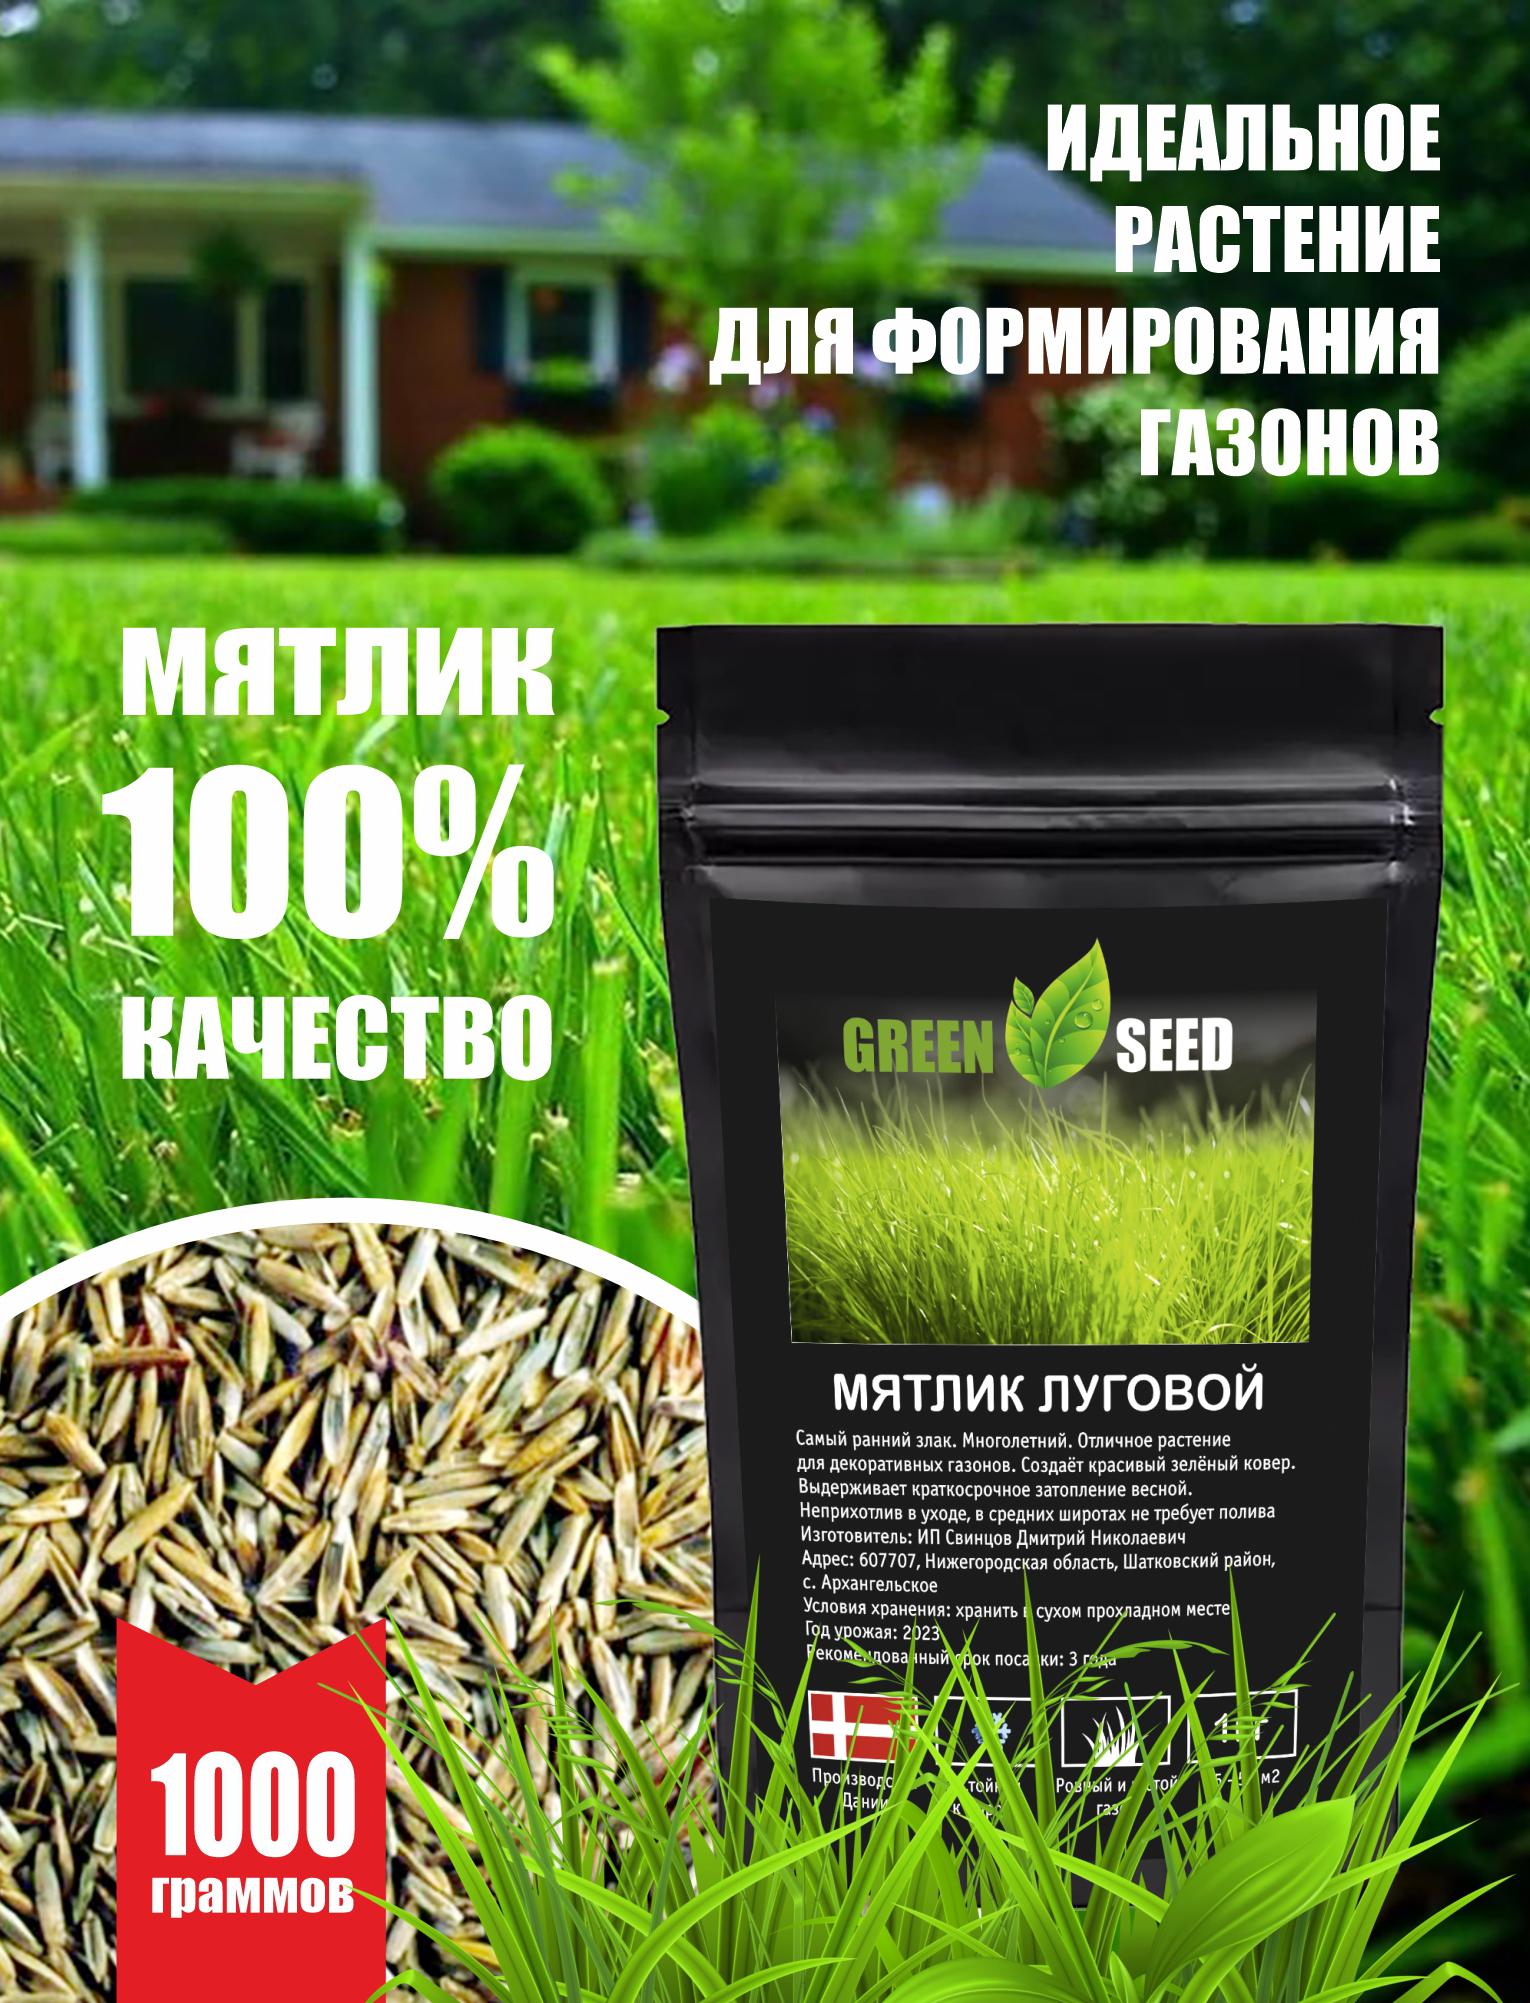 Семена мятлика лугового Green Seed 1000гр